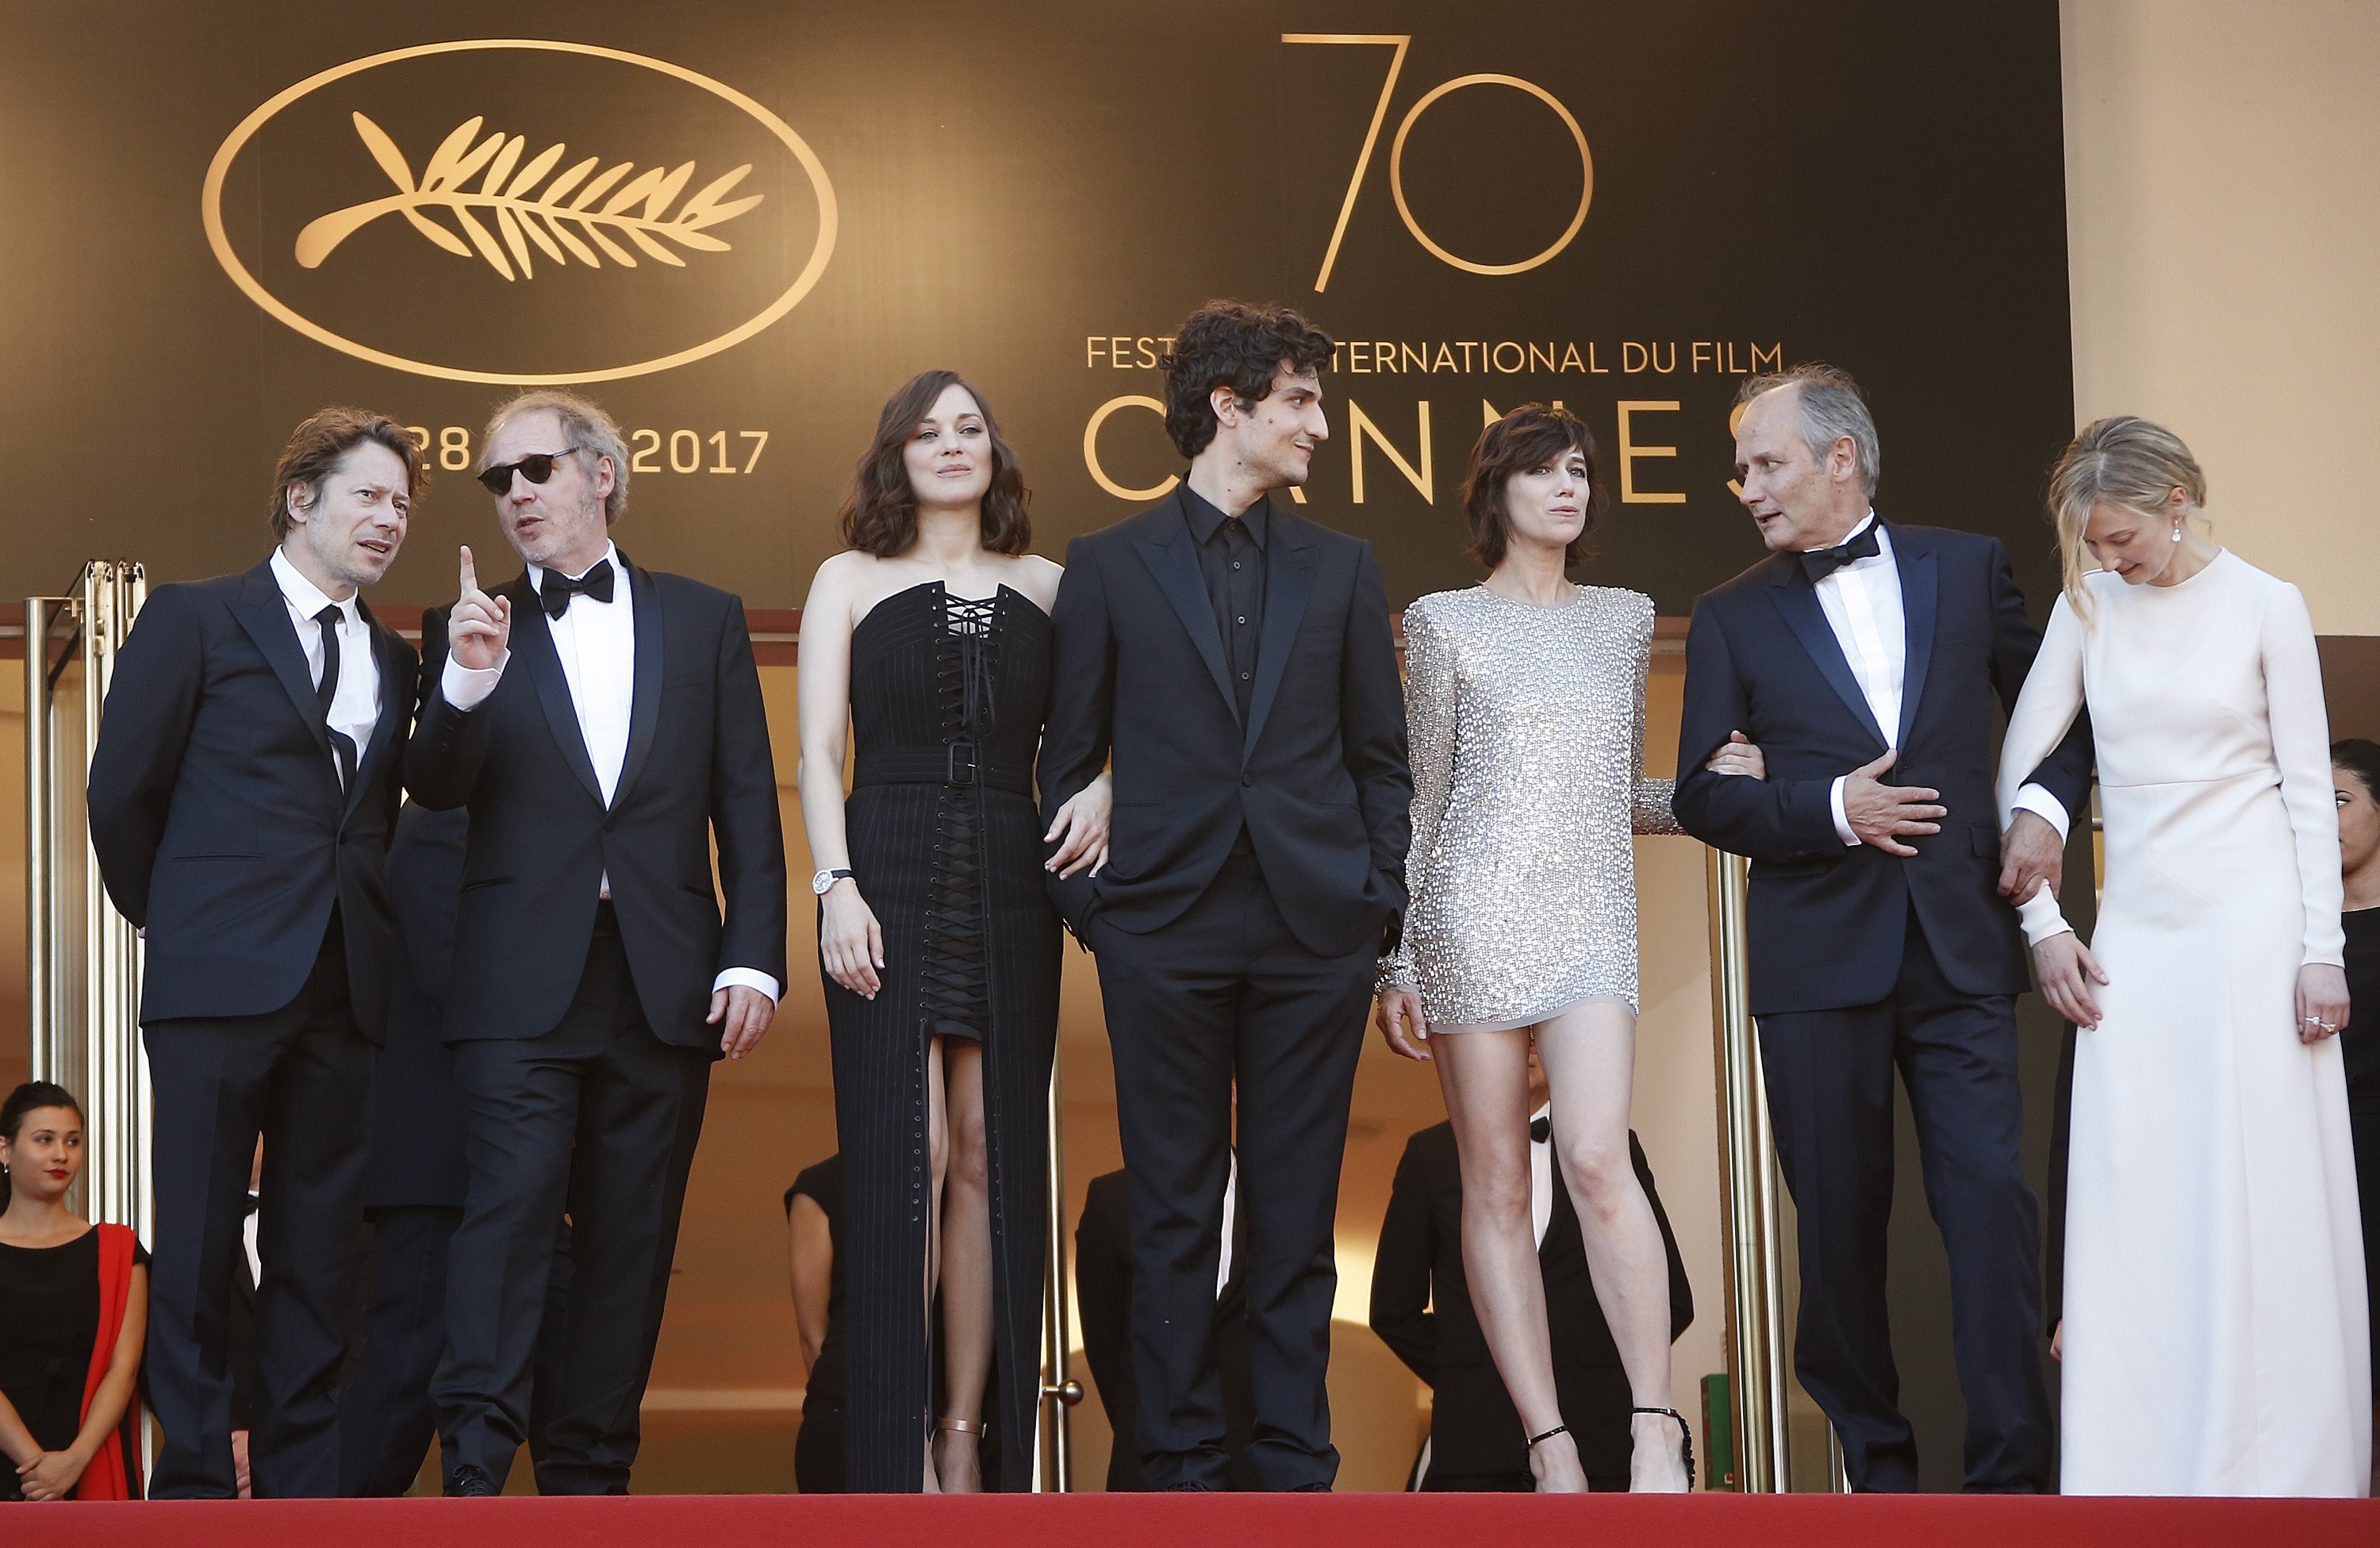 Festival u Cannesu još nije otkazan, nadaju se održavanju umanjene verzije u srpnju